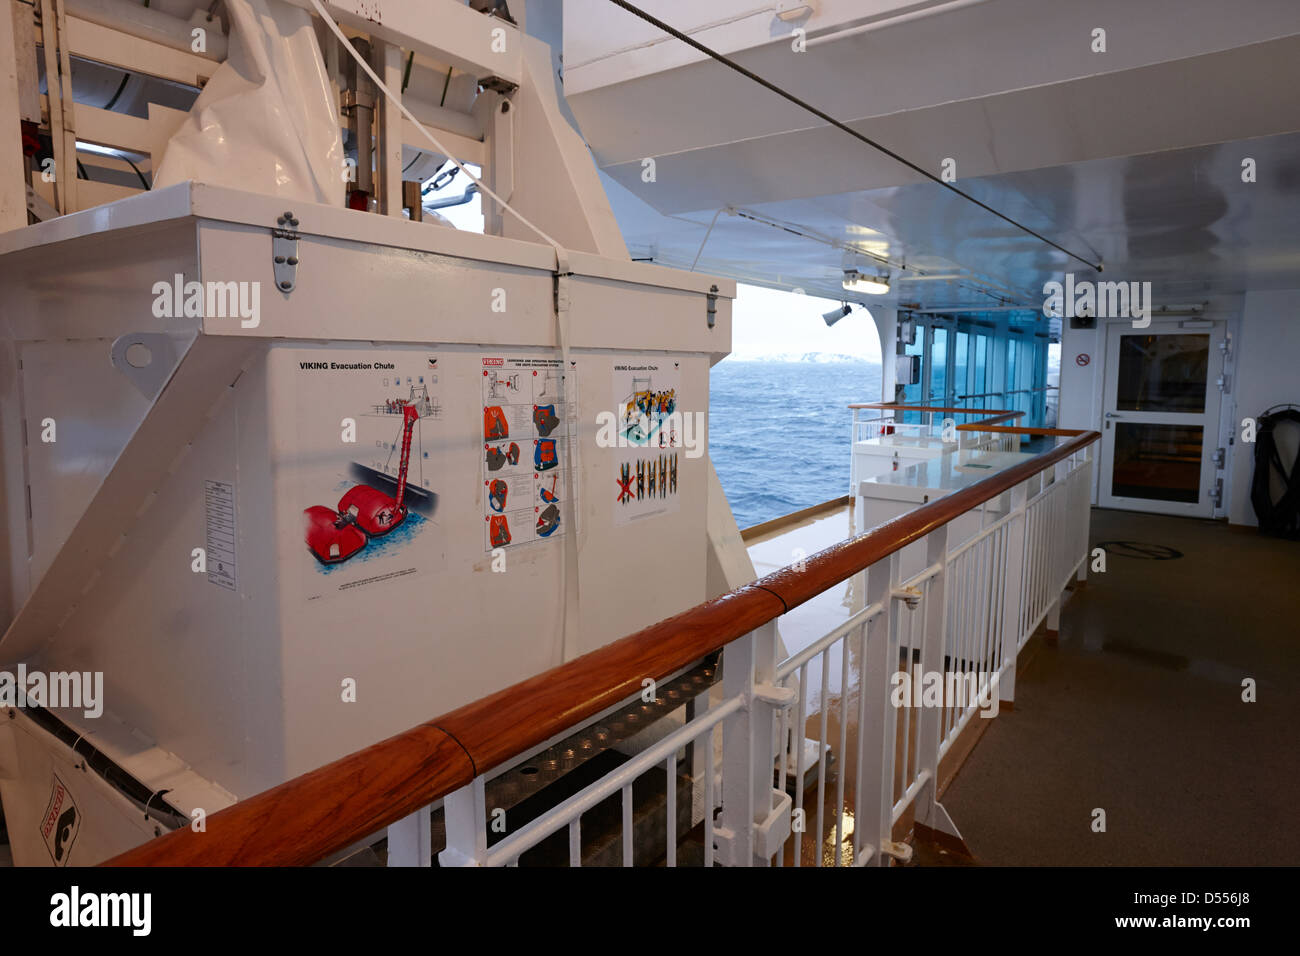 Viking Evakuierung Rutsche auf Passagierdecks Fähre Kreuzfahrt Schiff Norwegen Europa Stockfoto